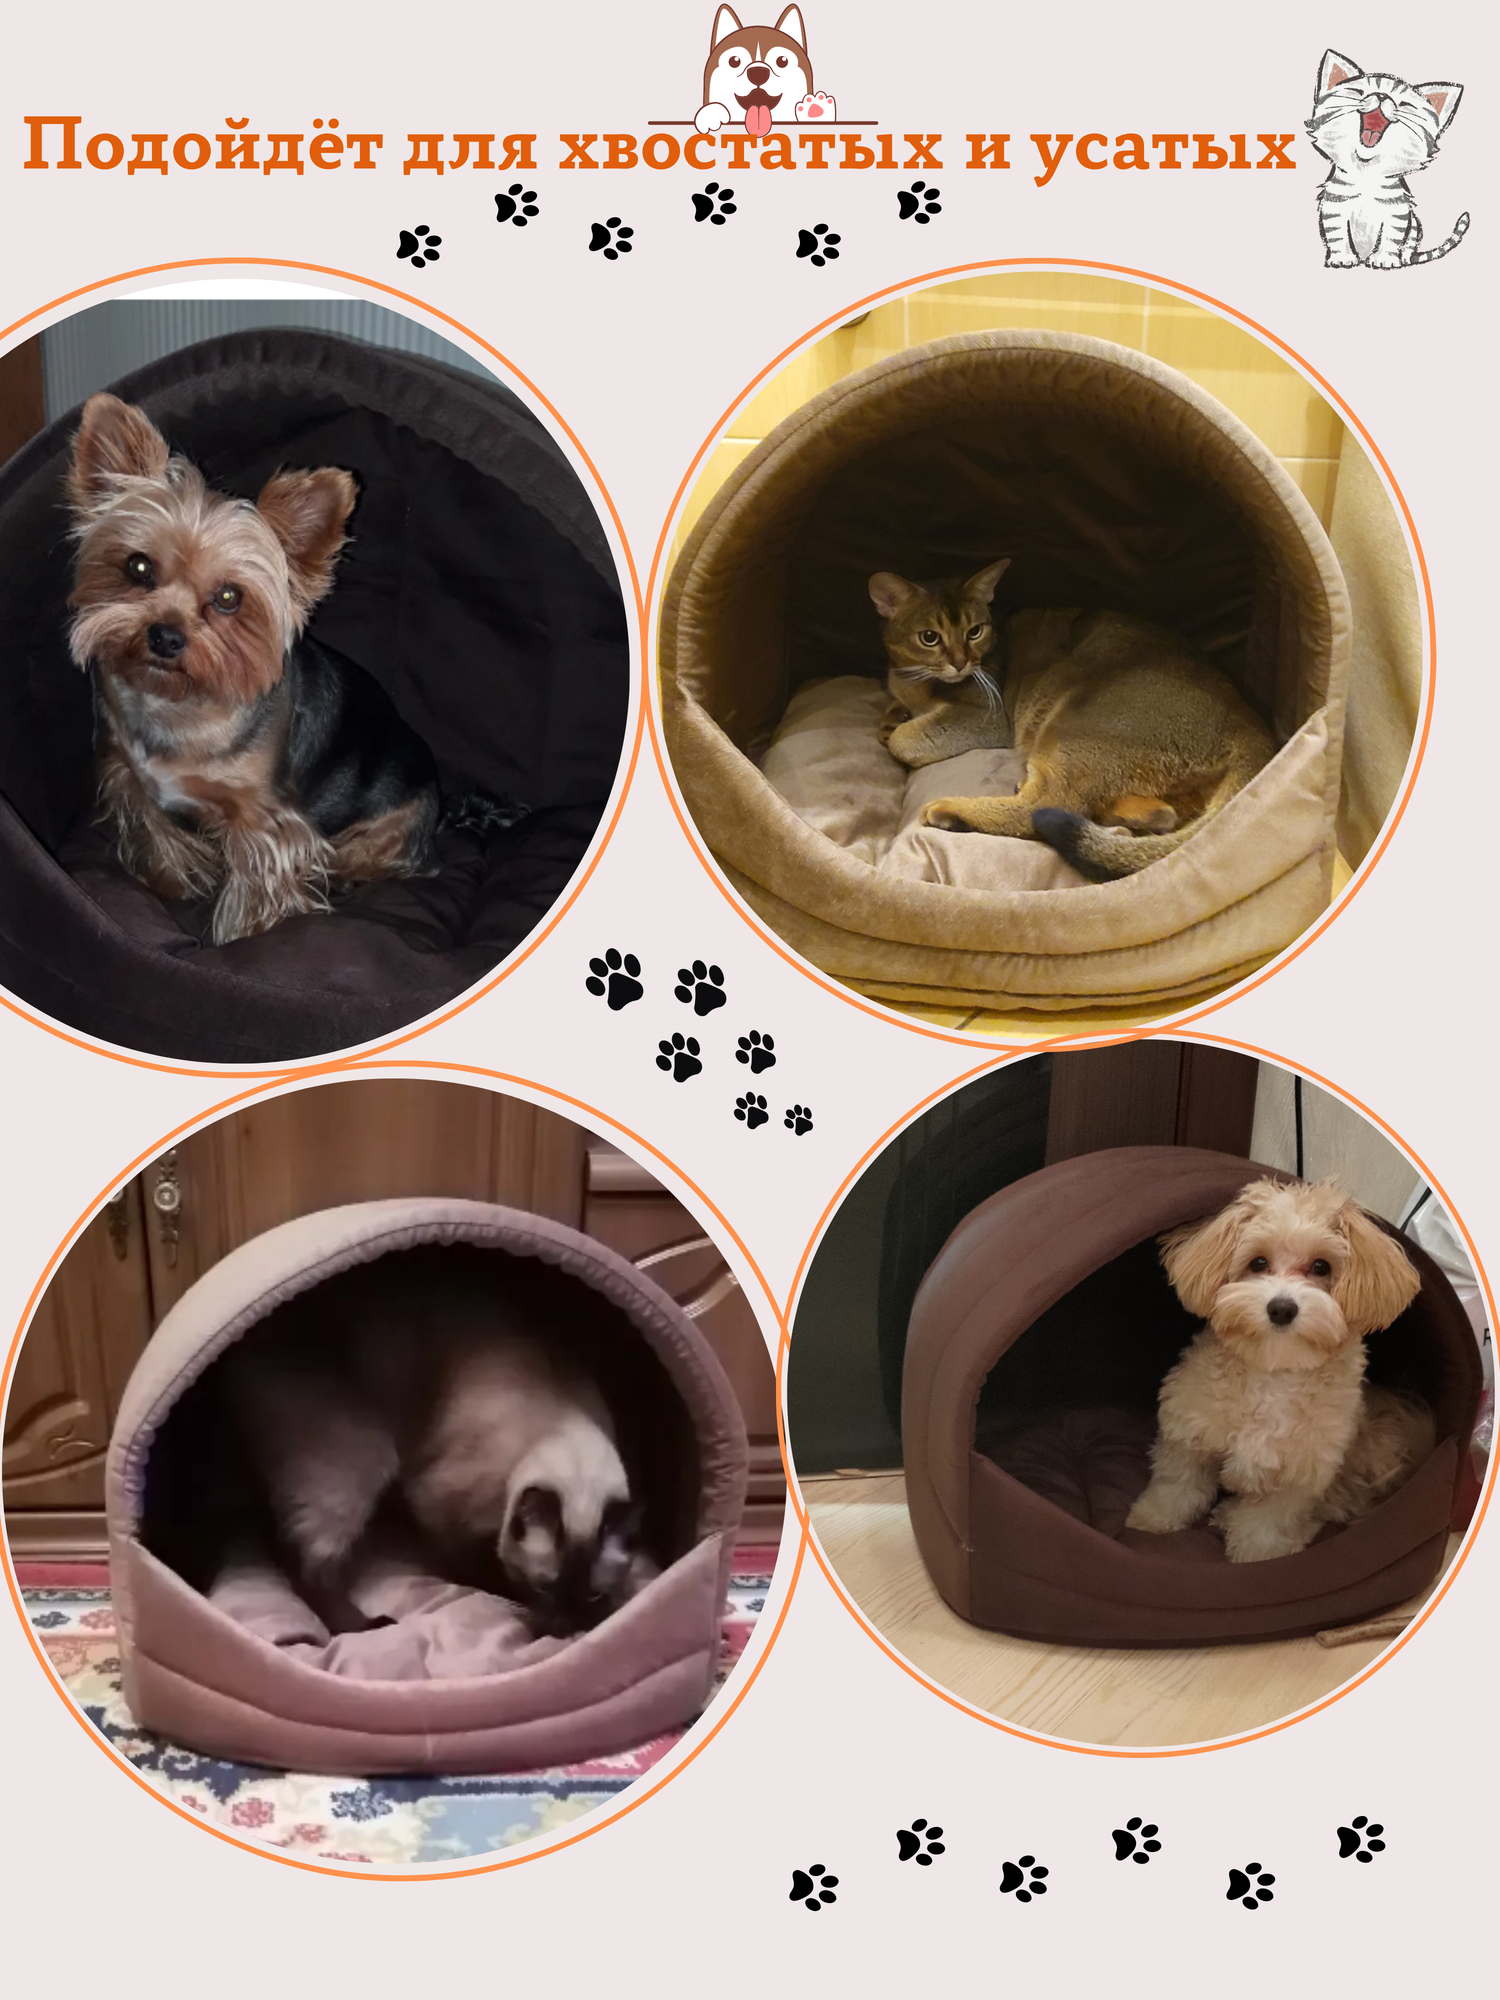 Лежанка домик для кошек, для собак мелких и средних пород, лежак для животных, со съёмной подушкой, цвет: бежевый, 42x50 см